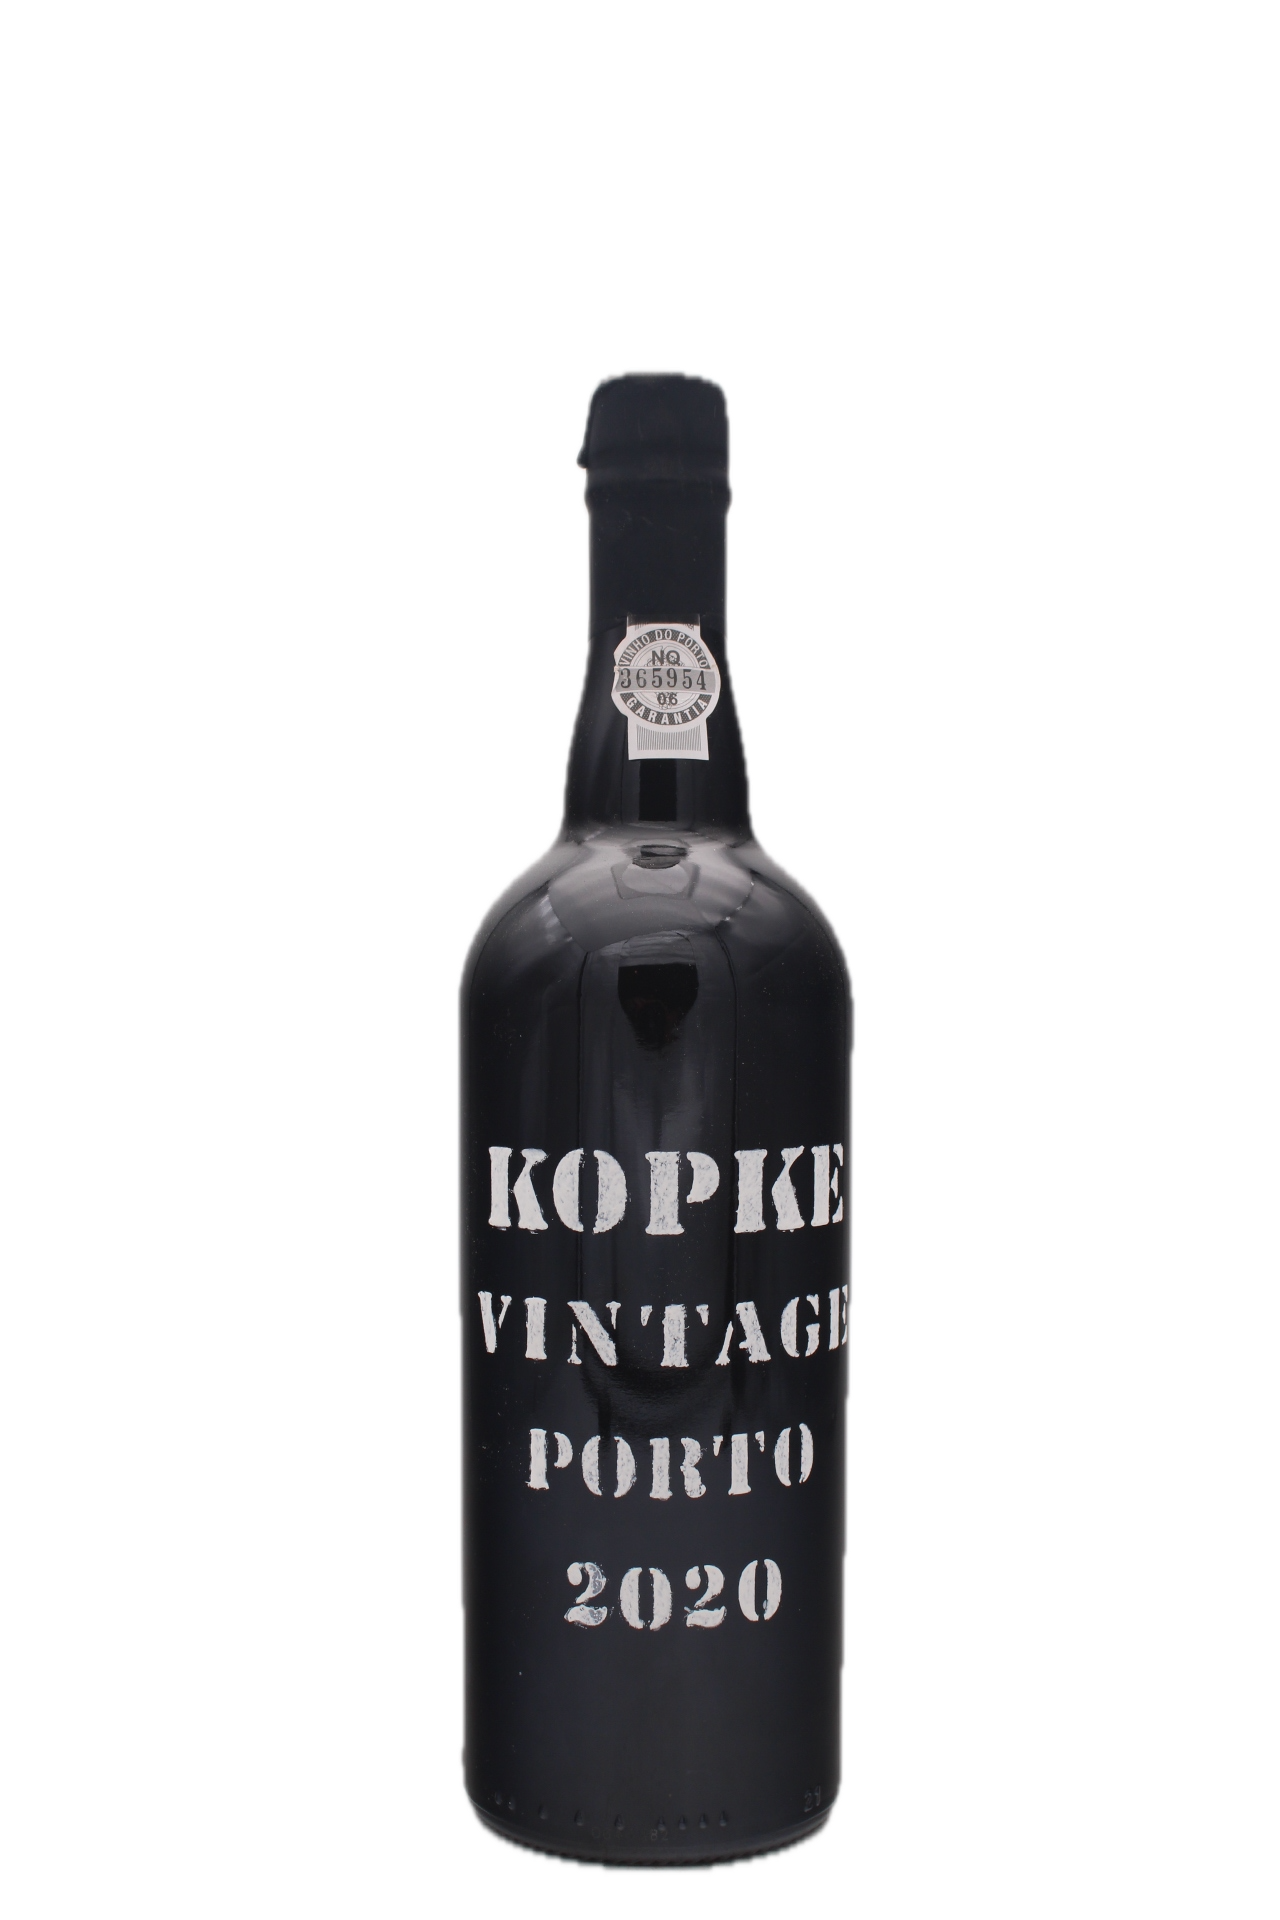 Kopke - Vintage Port 2020